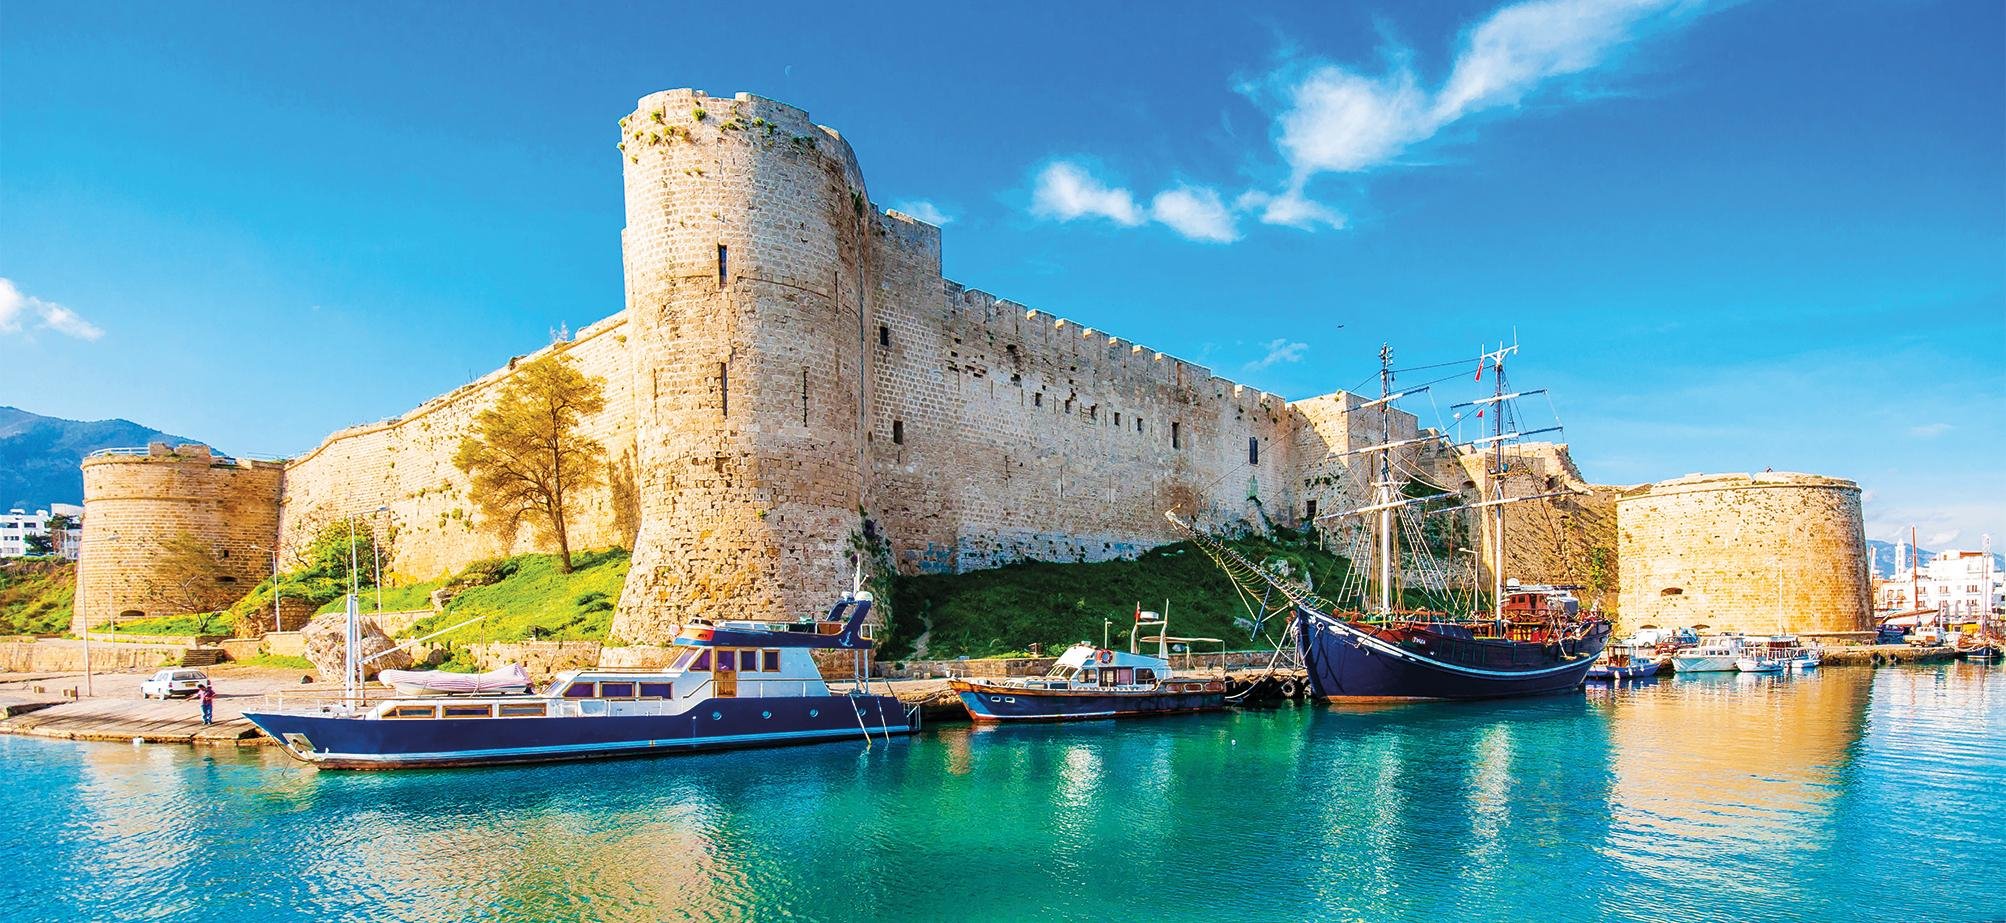 السفر بعد فيروس كورونا سياحة صيف 2020 قبرص 